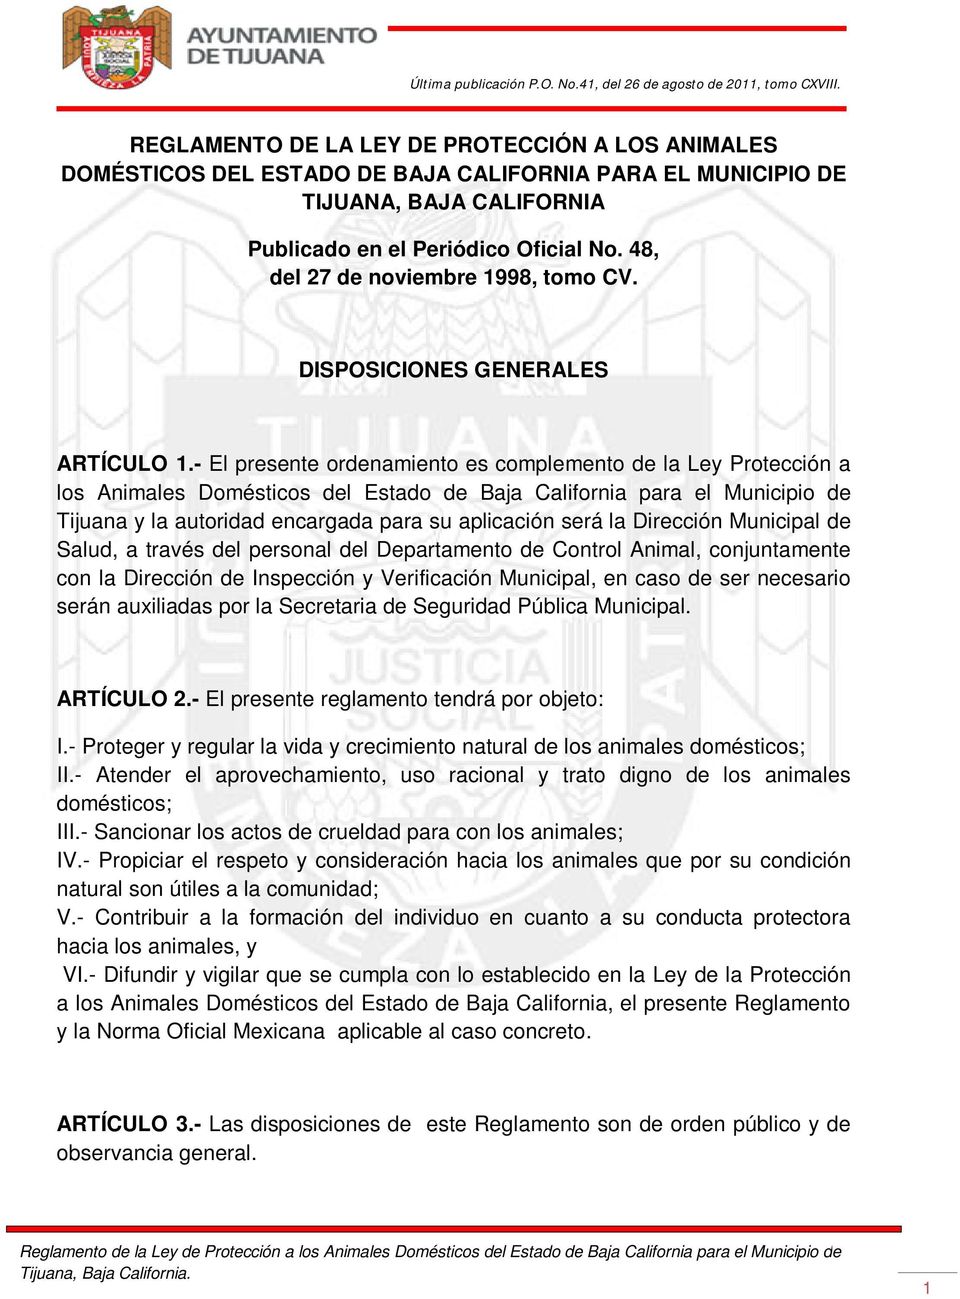 - El presente ordenamiento es complemento de la Ley Protección a los Animales Domésticos del Estado de Baja California para el Municipio de Tijuana y la autoridad encargada para su aplicación será la